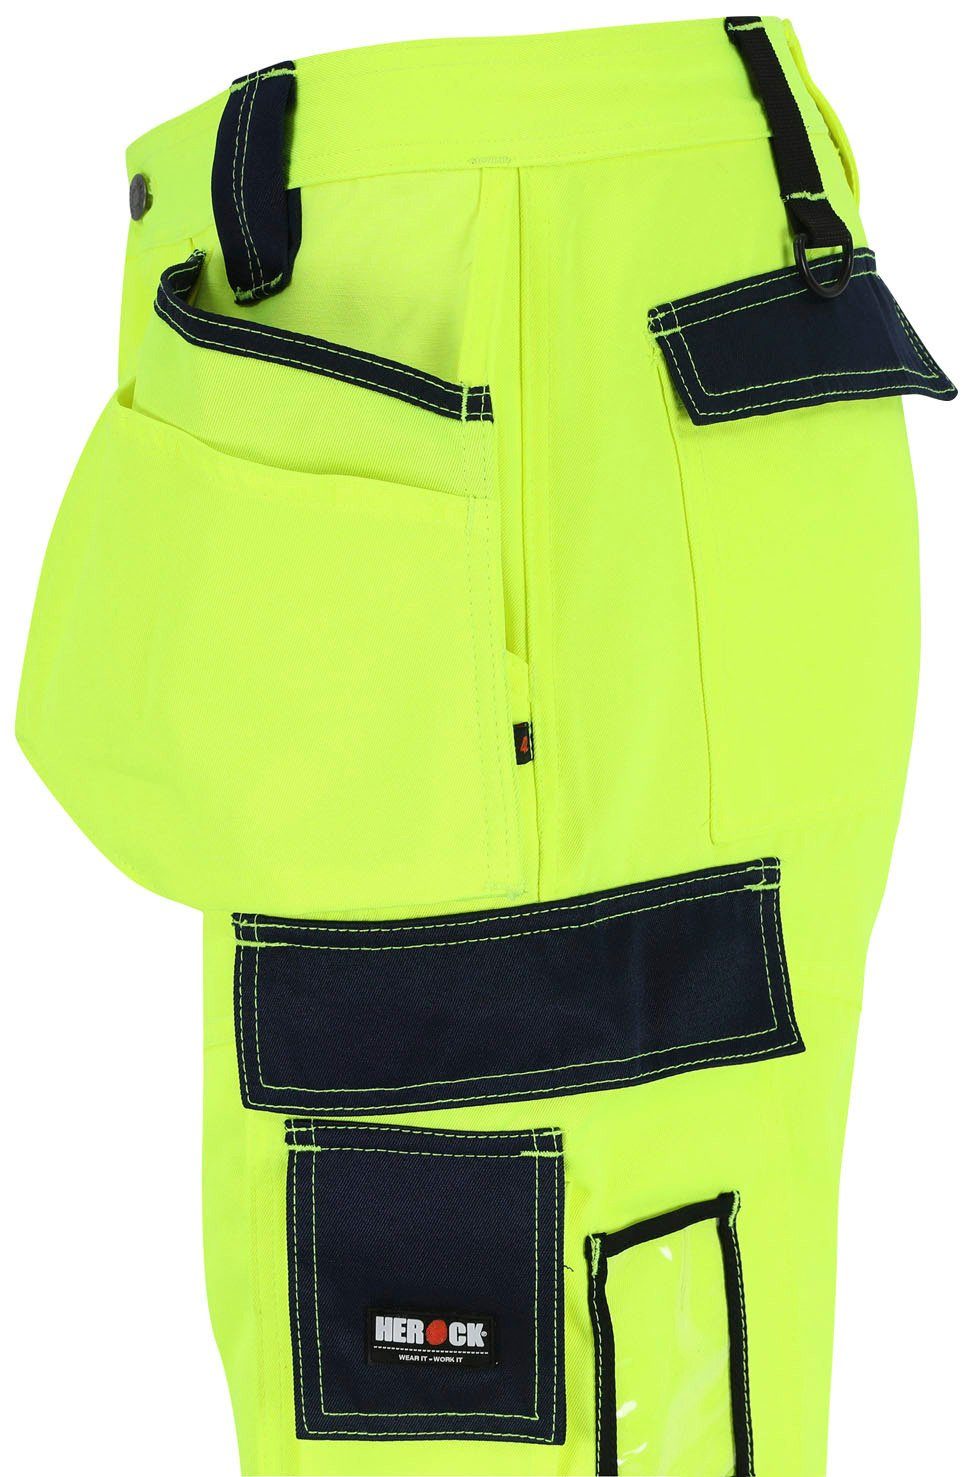 Herock viele Styx Arbeitshose Taschen, Wasserabweisend, Hose feste 2 Warnschutz Nageltaschen, angenehm gelb sehr